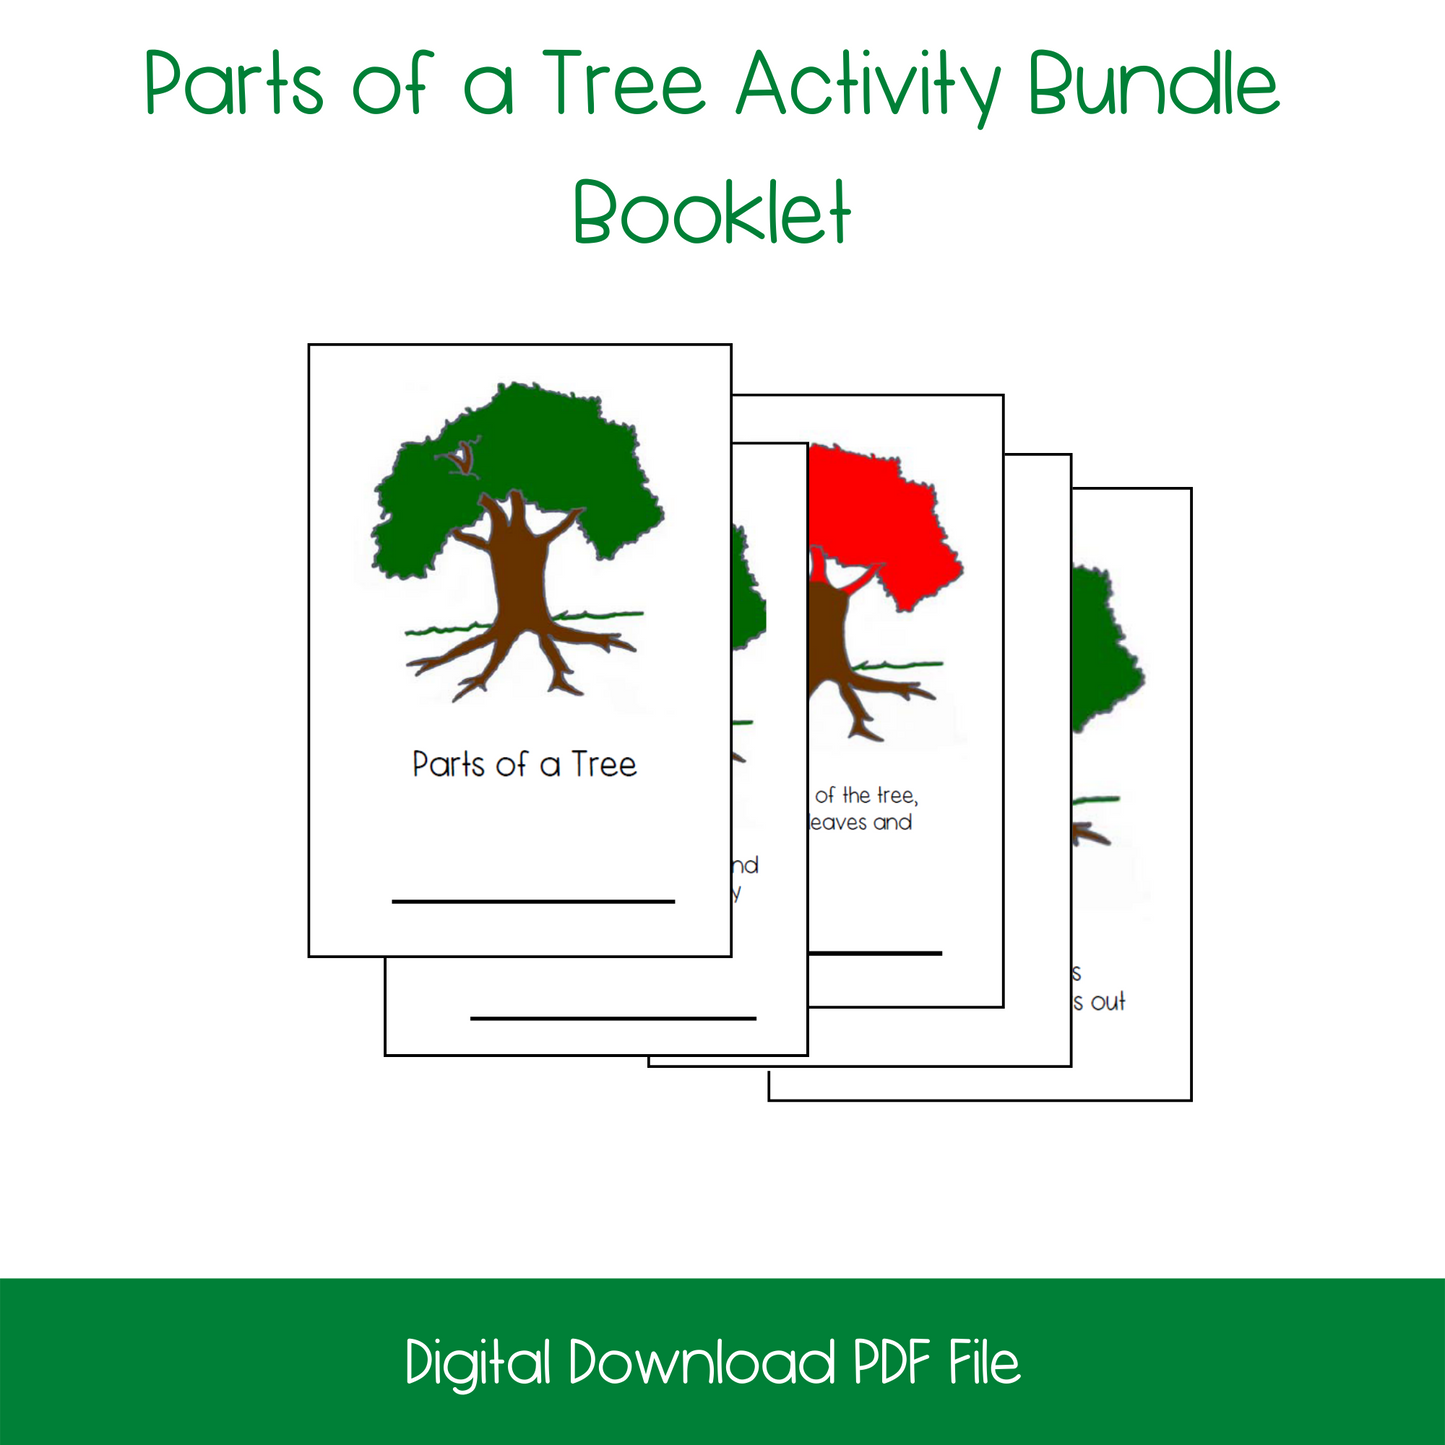 Parts of a Tree Activity Bundle